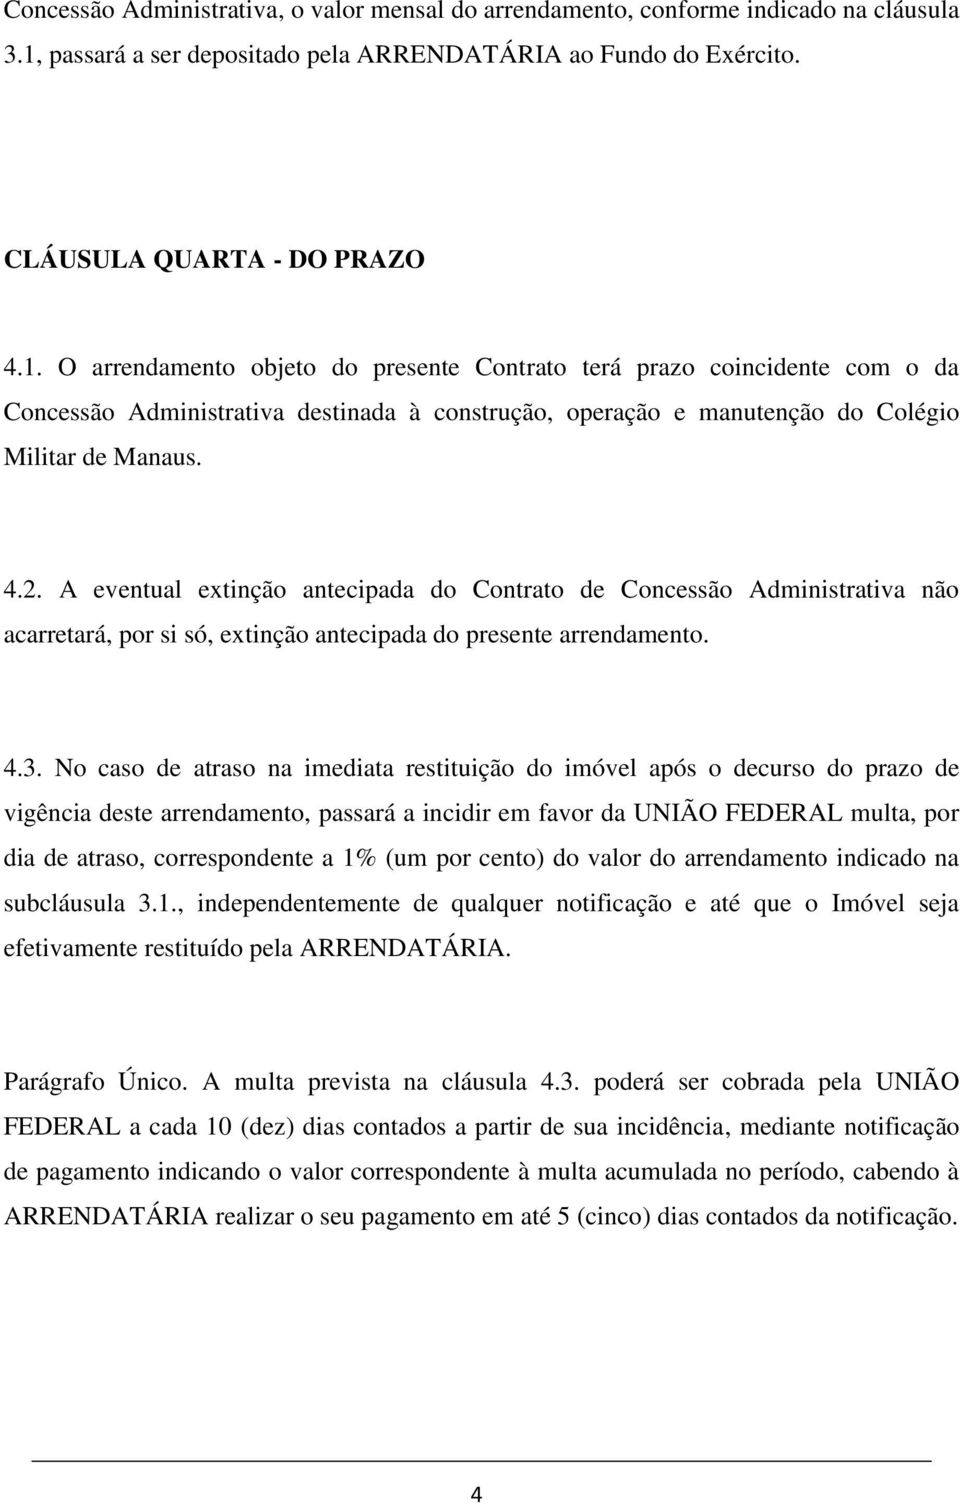 O arrendamento objeto do presente Contrato terá prazo coincidente com o da Concessão Administrativa destinada à construção, operação e manutenção do Colégio Militar de Manaus. 4.2.